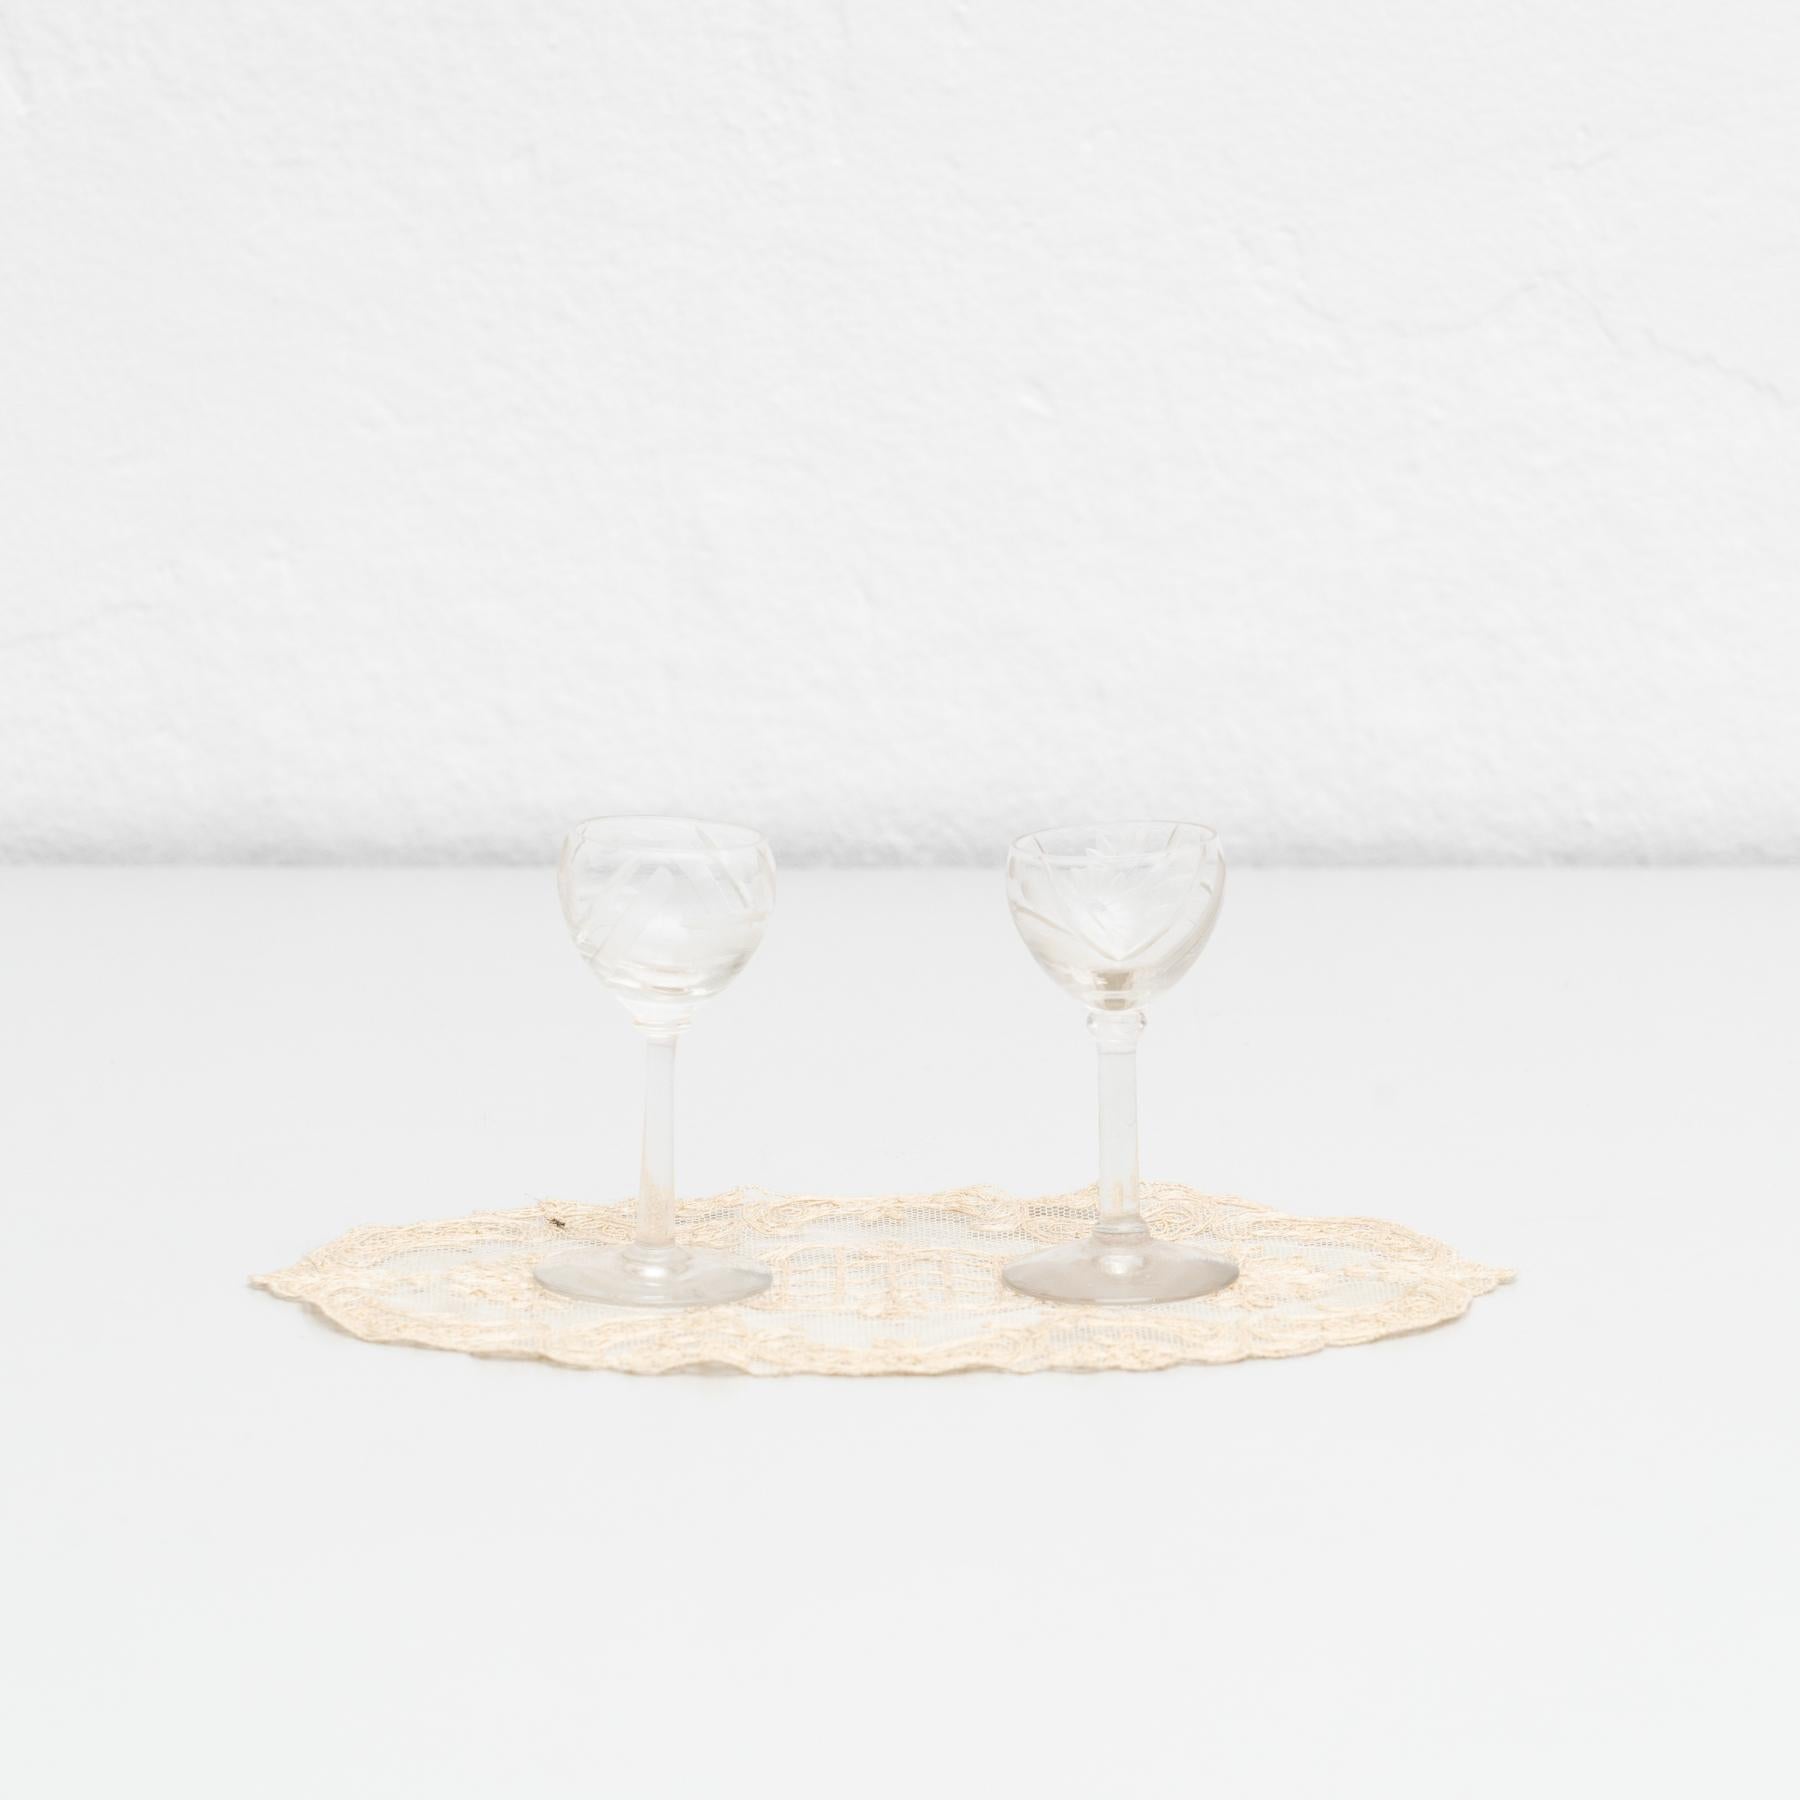 Antike Französisch Satz von 2 Glas Weinbecher auf einem Wandteppich.

Hergestellt von einem unbekannten Hersteller in Frankreich, um 1950.

Originaler Zustand mit geringen alters- und gebrauchsbedingten Abnutzungserscheinungen, der eine schöne